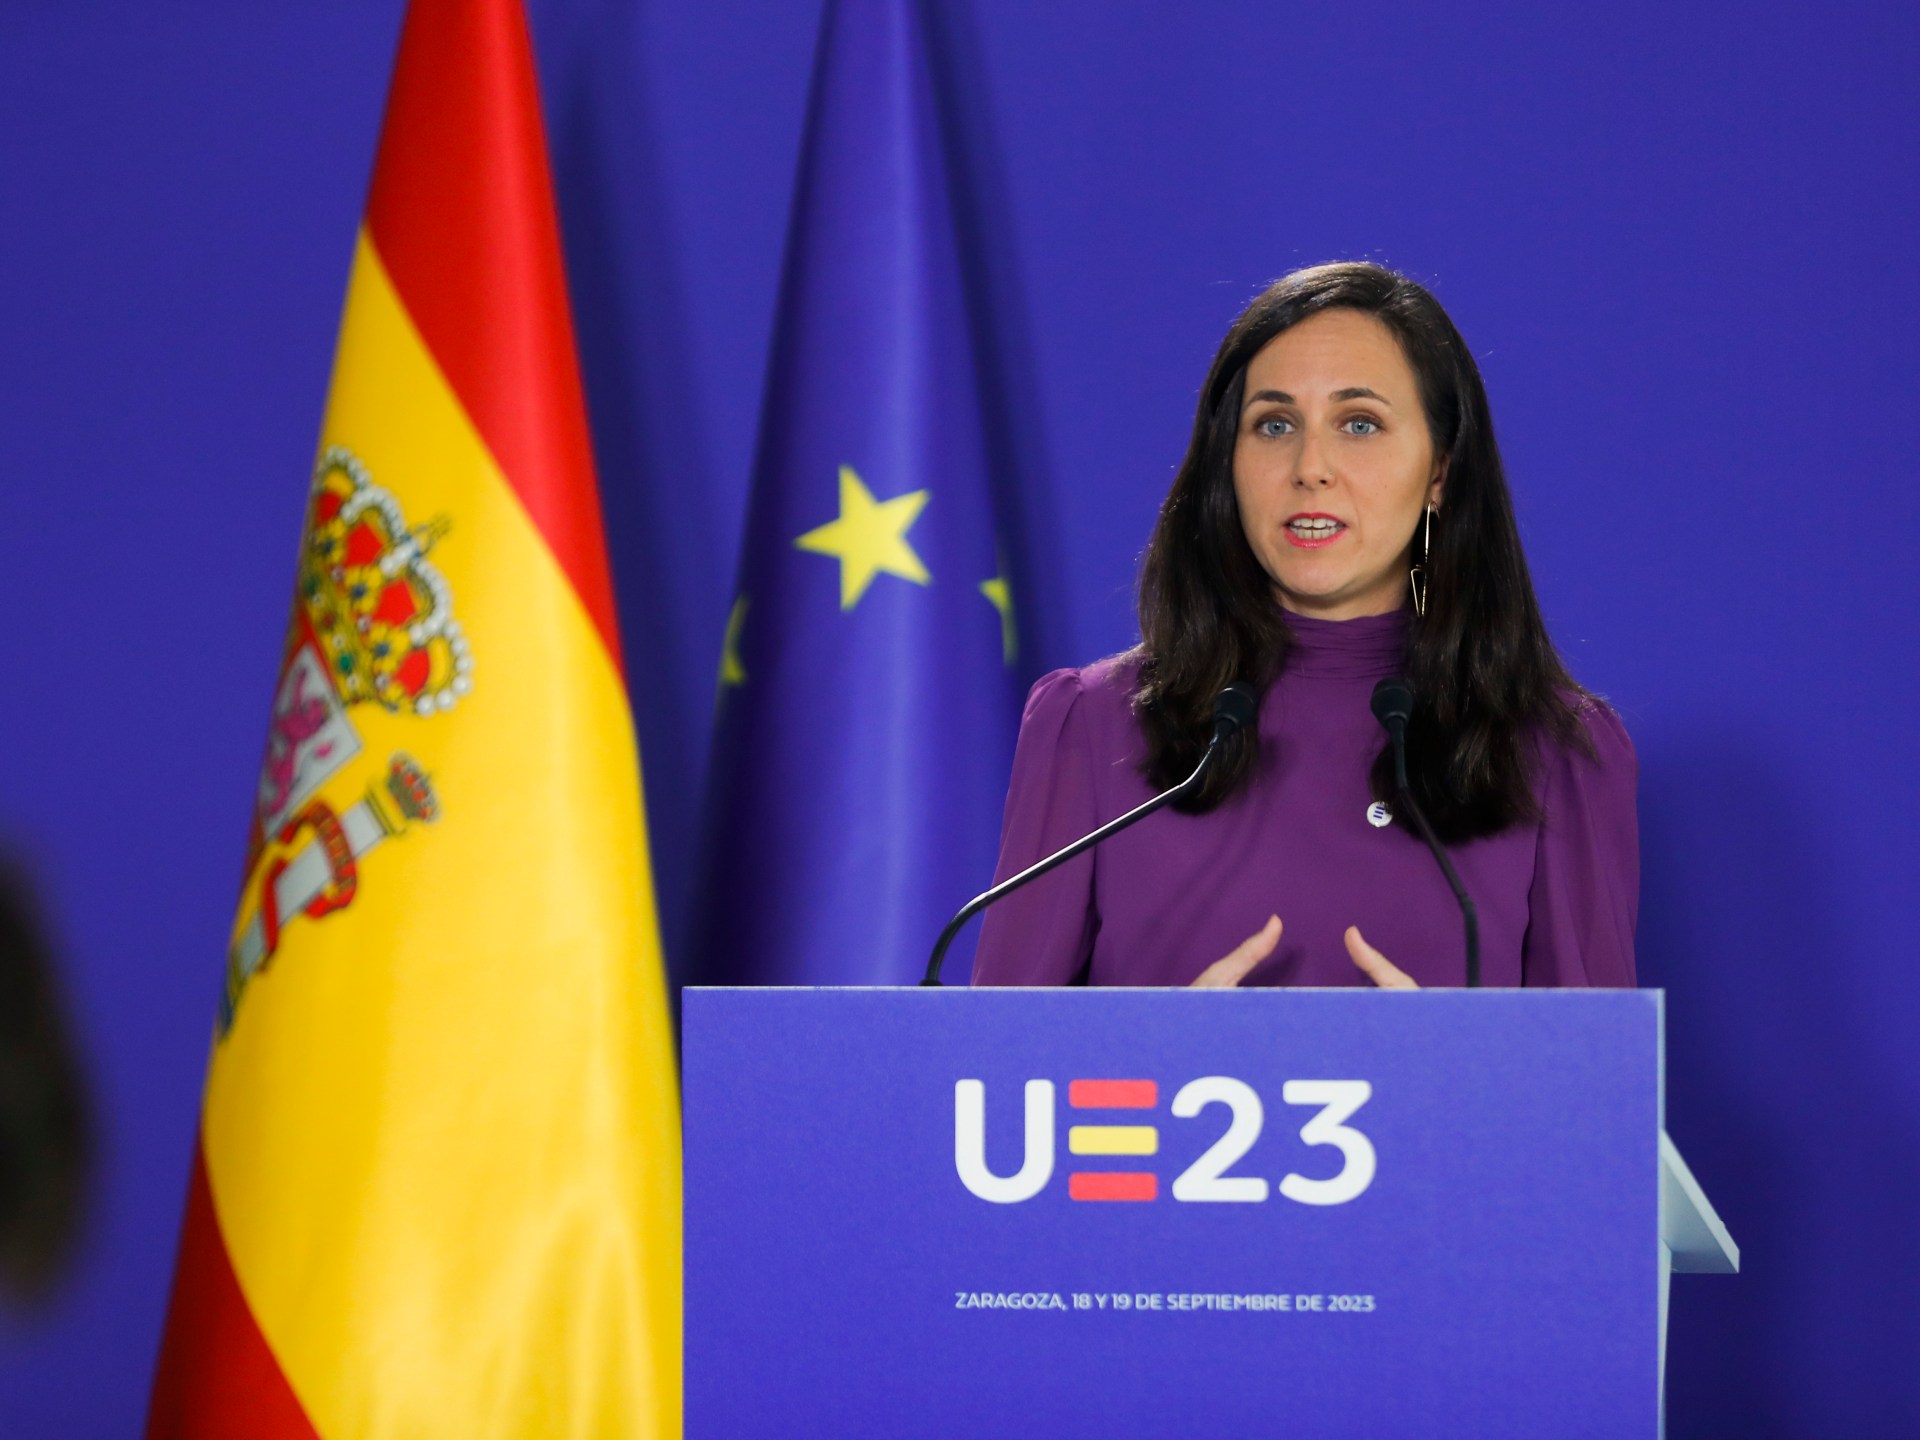 وزيرة إسبانية للأوروبيين: لا تجعلونا متواطئين في الإبادة الجماعية بغزة | أخبار – البوكس نيوز